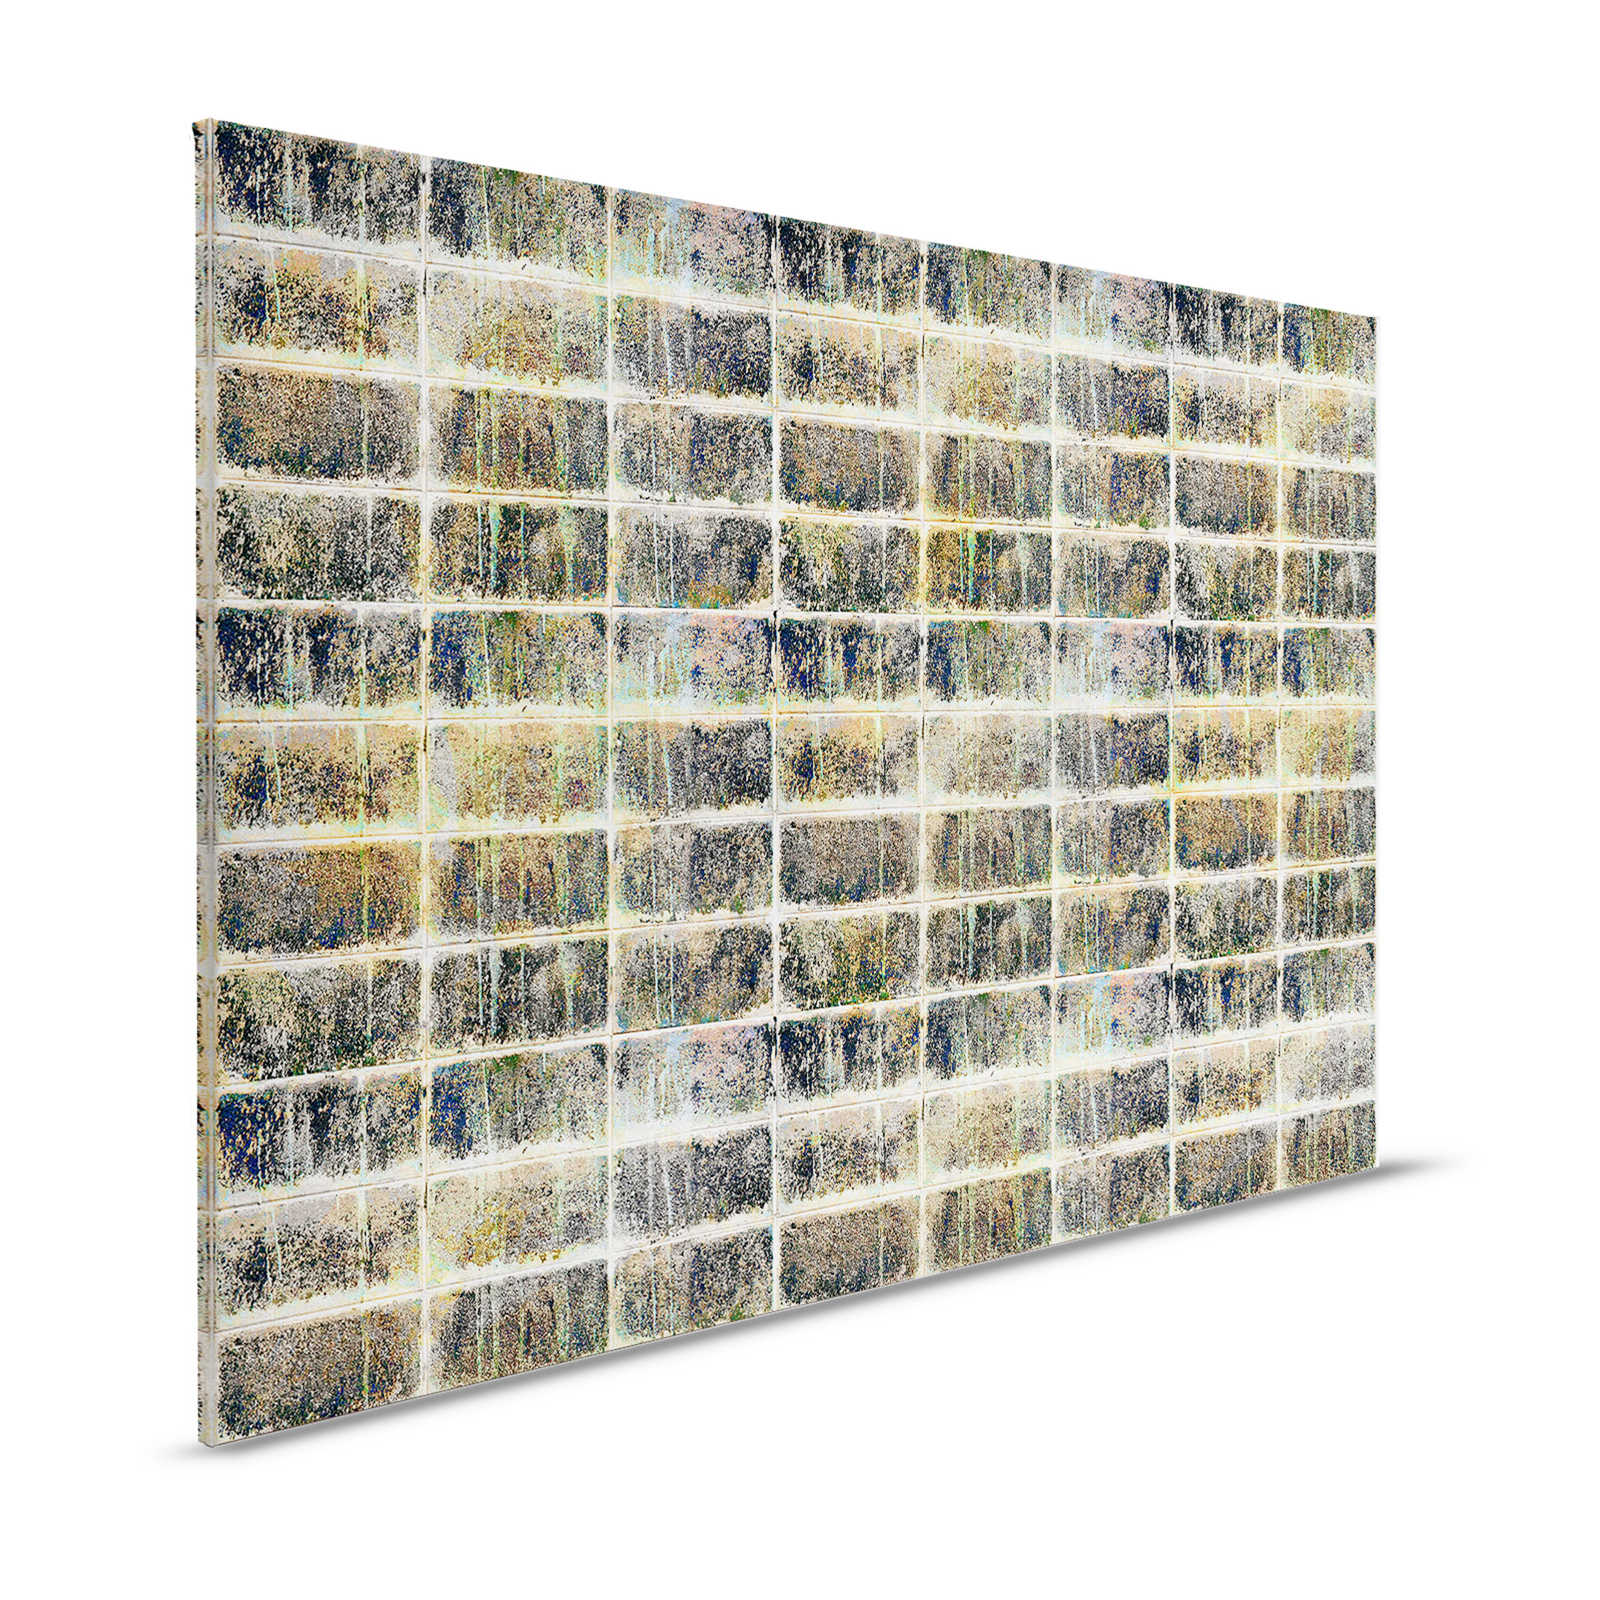 Fabriek 1 - Canvas schilderij Gebruikt Optiek Tegel Spiegel Industrieel Design - 1,20 m x 0,80 m
